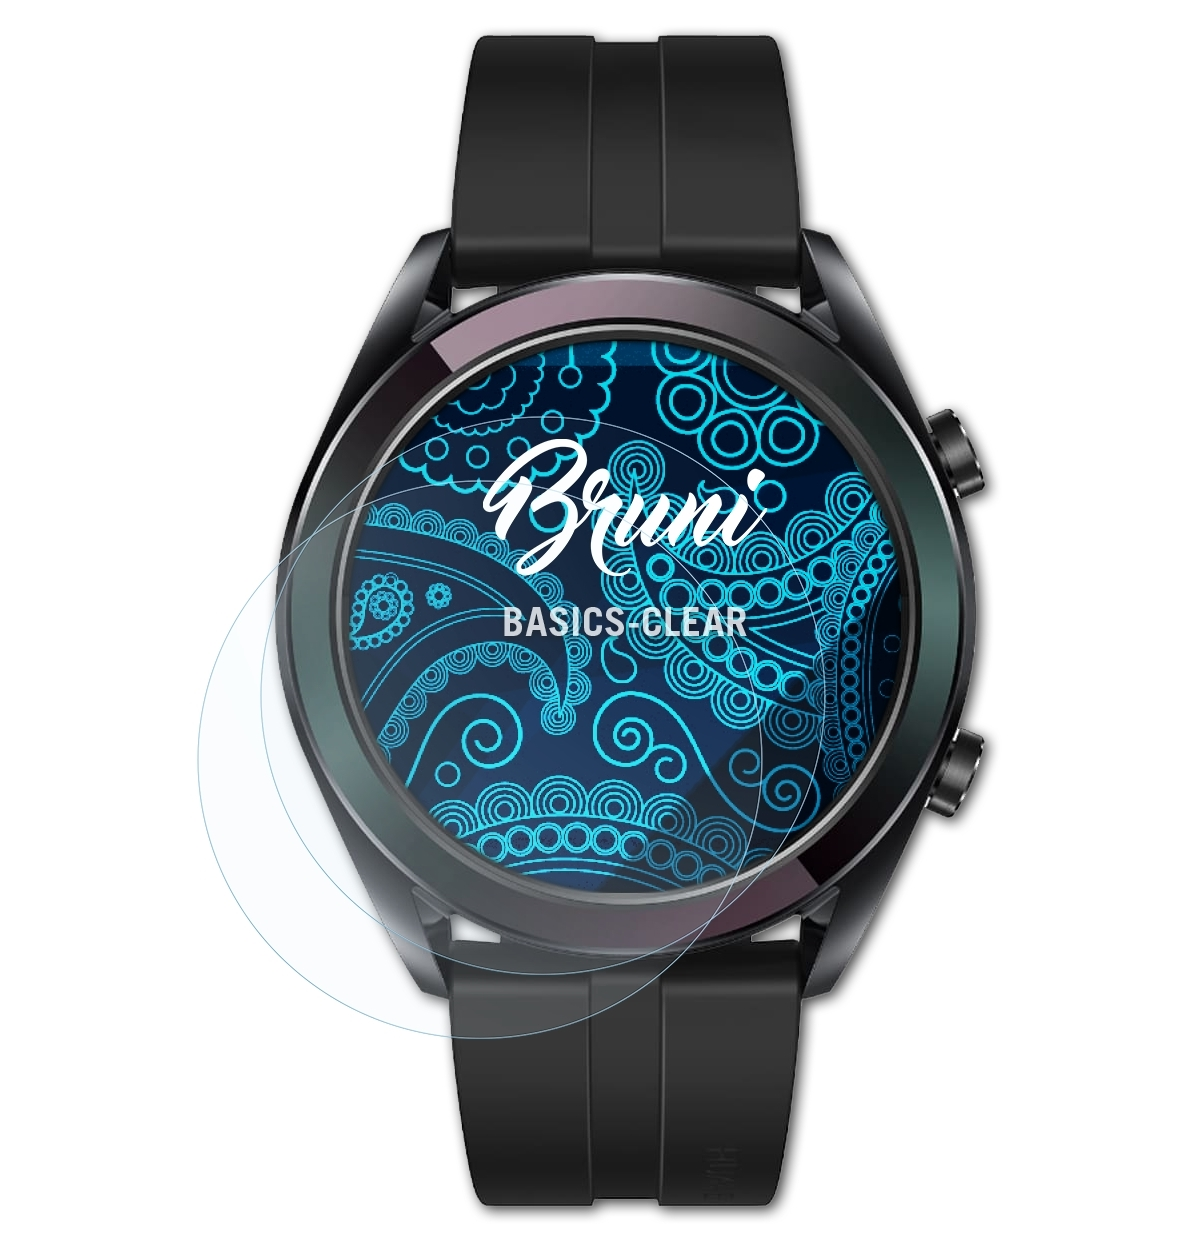 Basics-Clear Watch BRUNI Huawei Elegant) 2x GT Schutzfolie(für